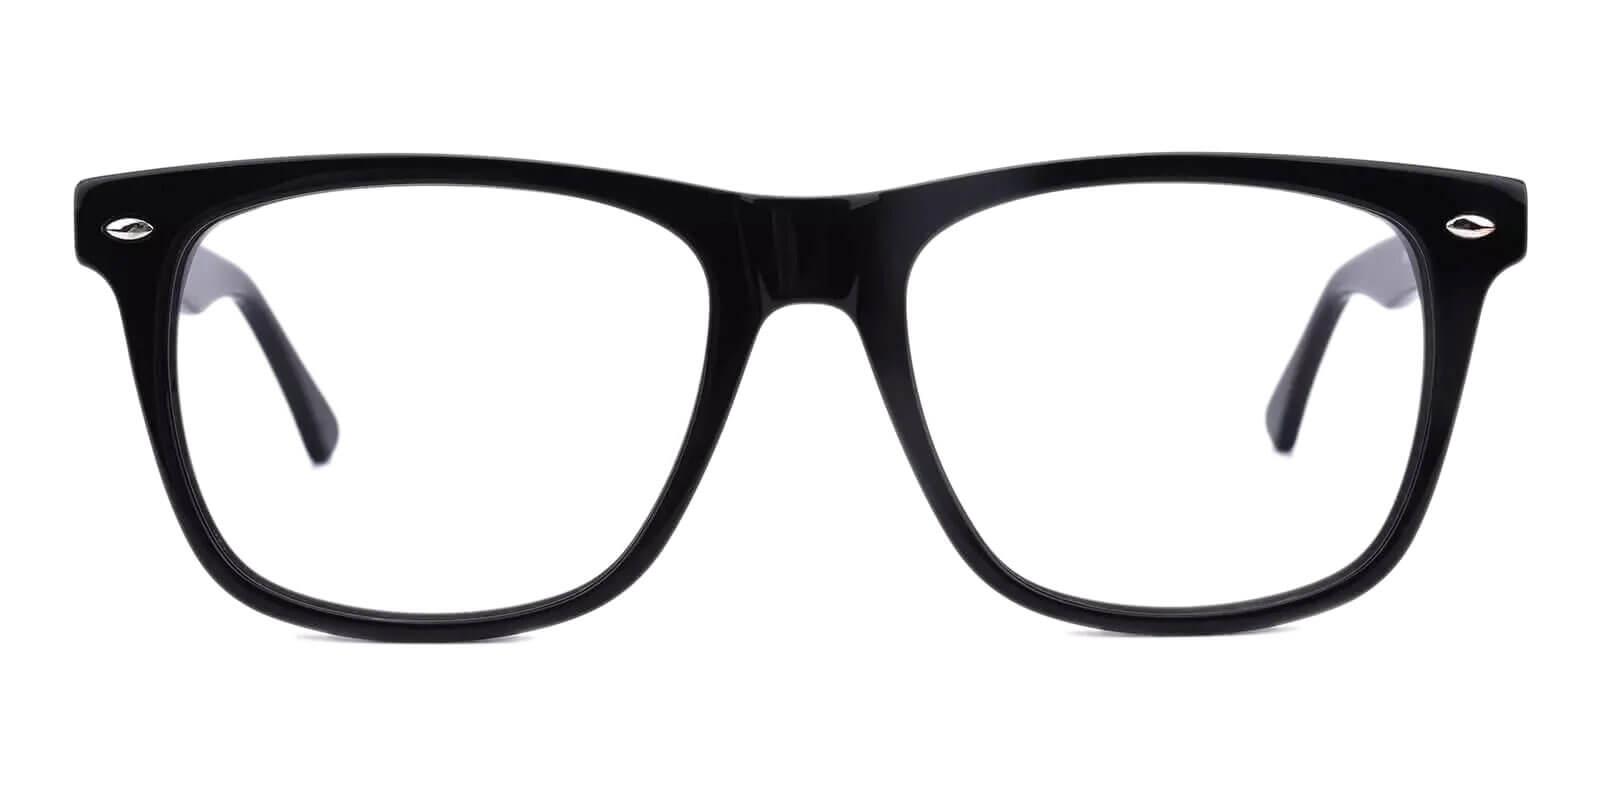 Montalvo Black Acetate Eyeglasses , SpringHinges , UniversalBridgeFit Frames from ABBE Glasses